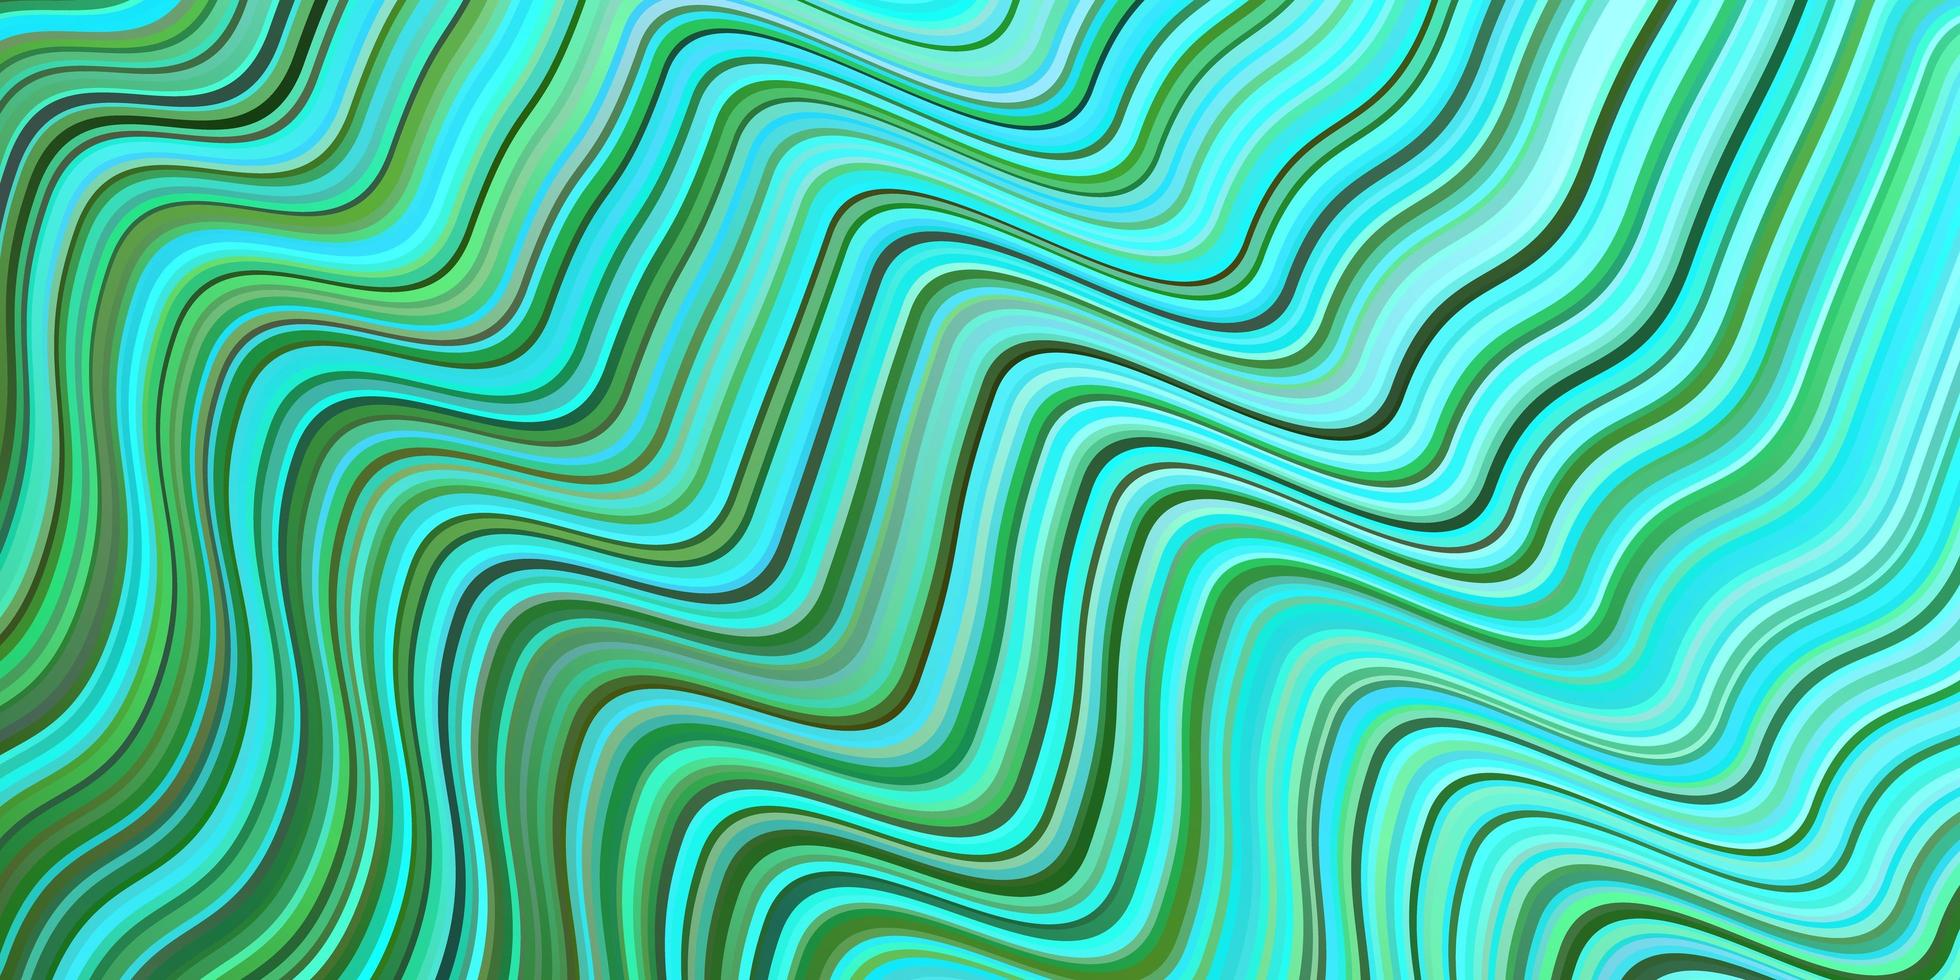 lichtblauwe, groene vectorachtergrond met gebogen lijnen. vector